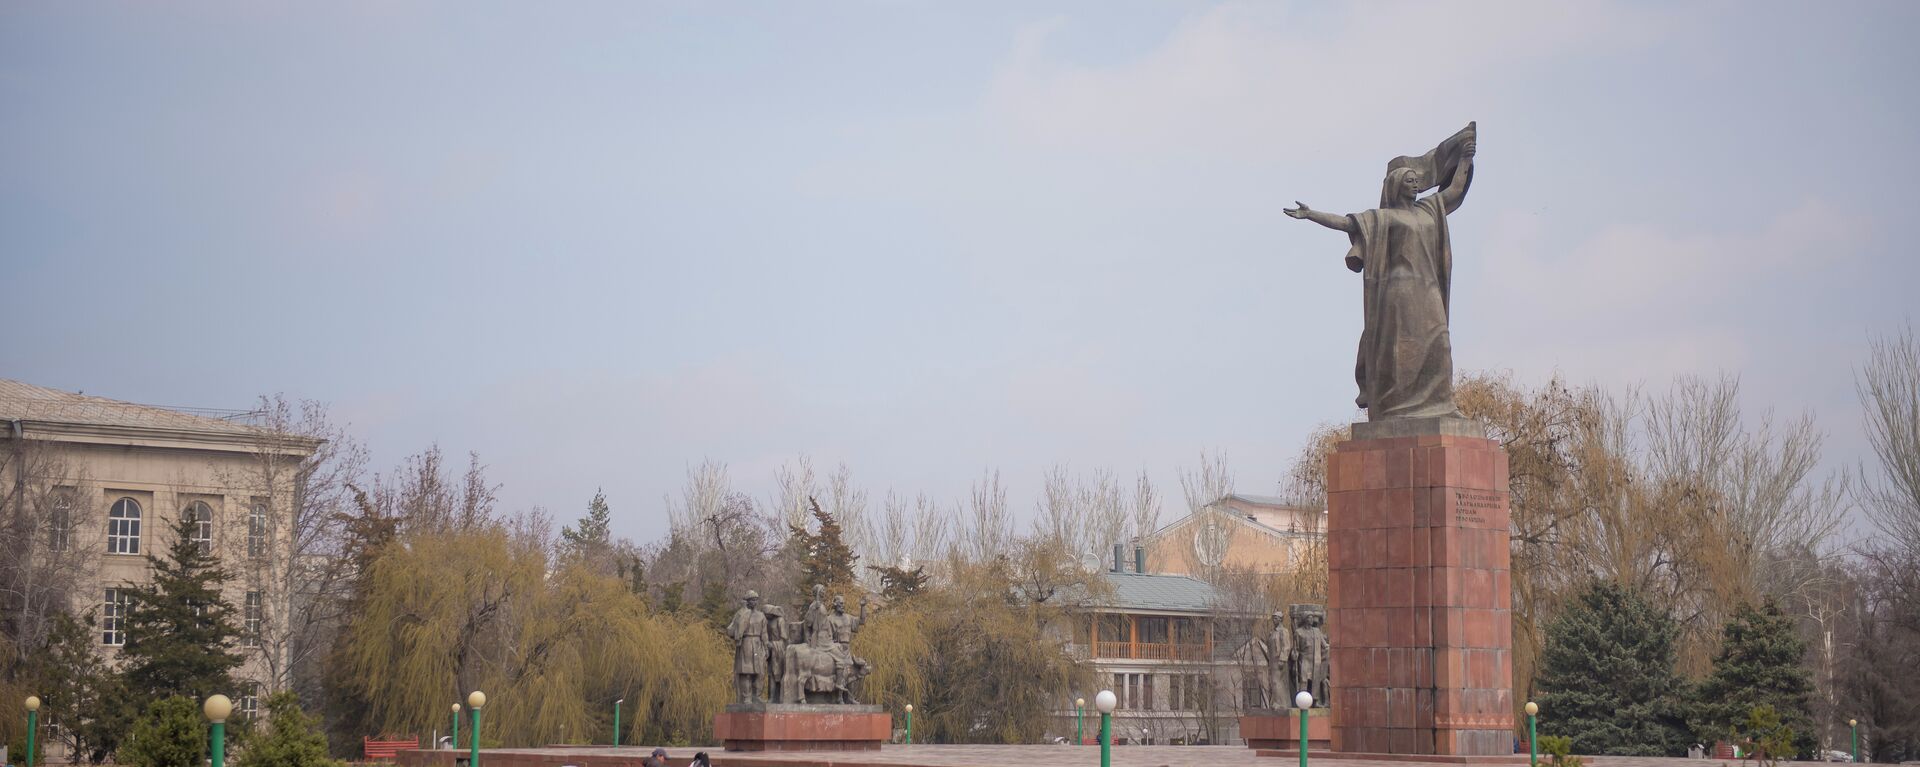 Памятник Уркуе Салиевой. 2015 г. - Sputnik Кыргызстан, 1920, 08.04.2017